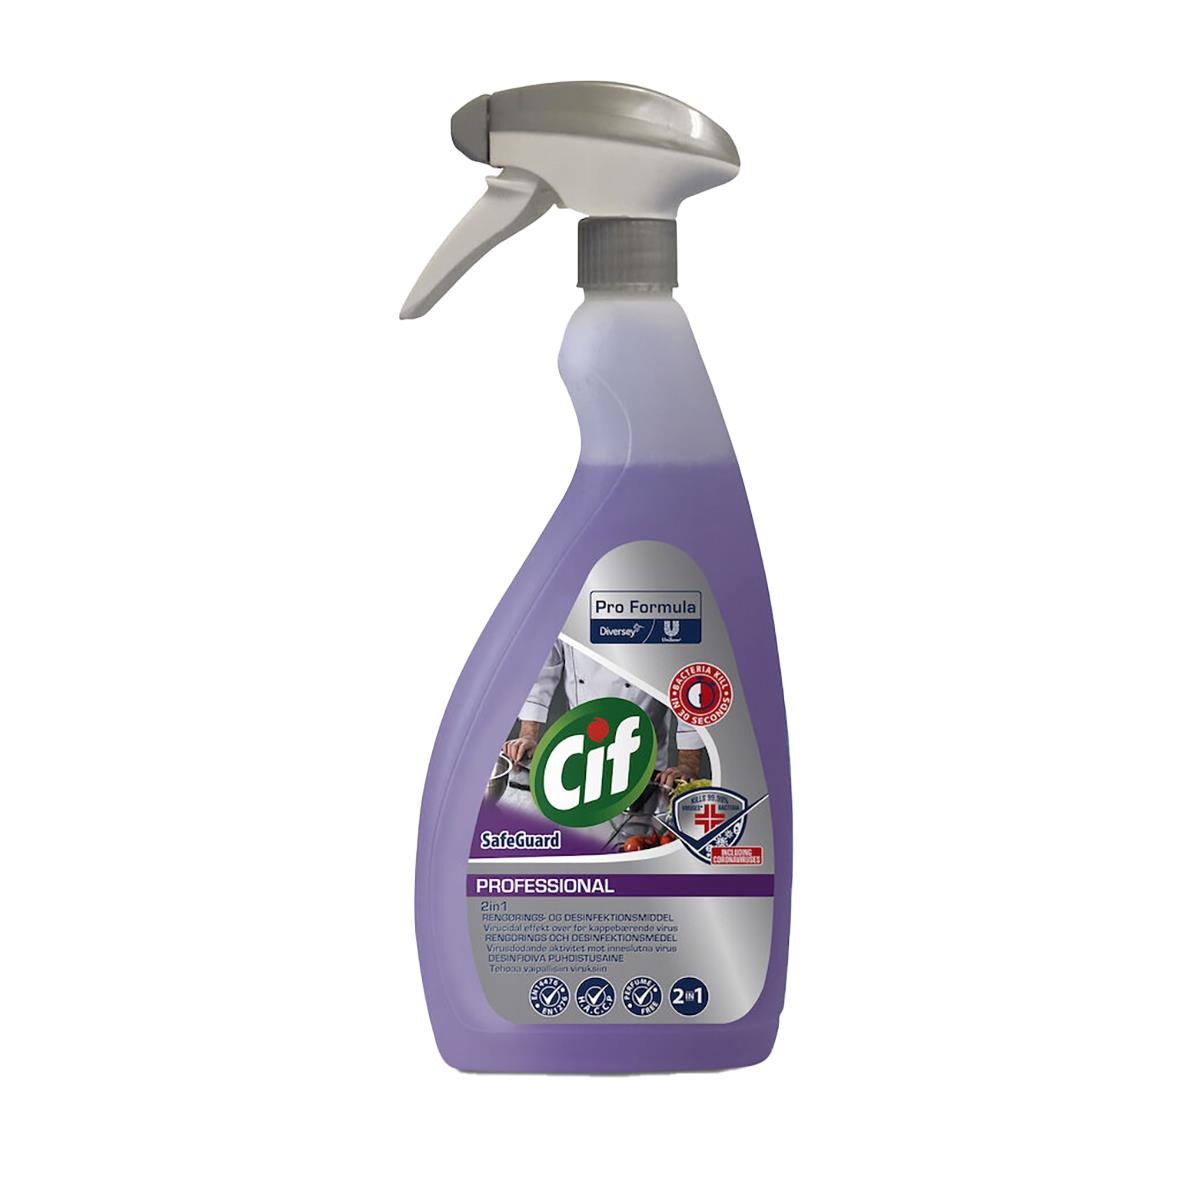 Köksrent Cif Pro Formula 2in1 Disinfectant 750ml 52010391